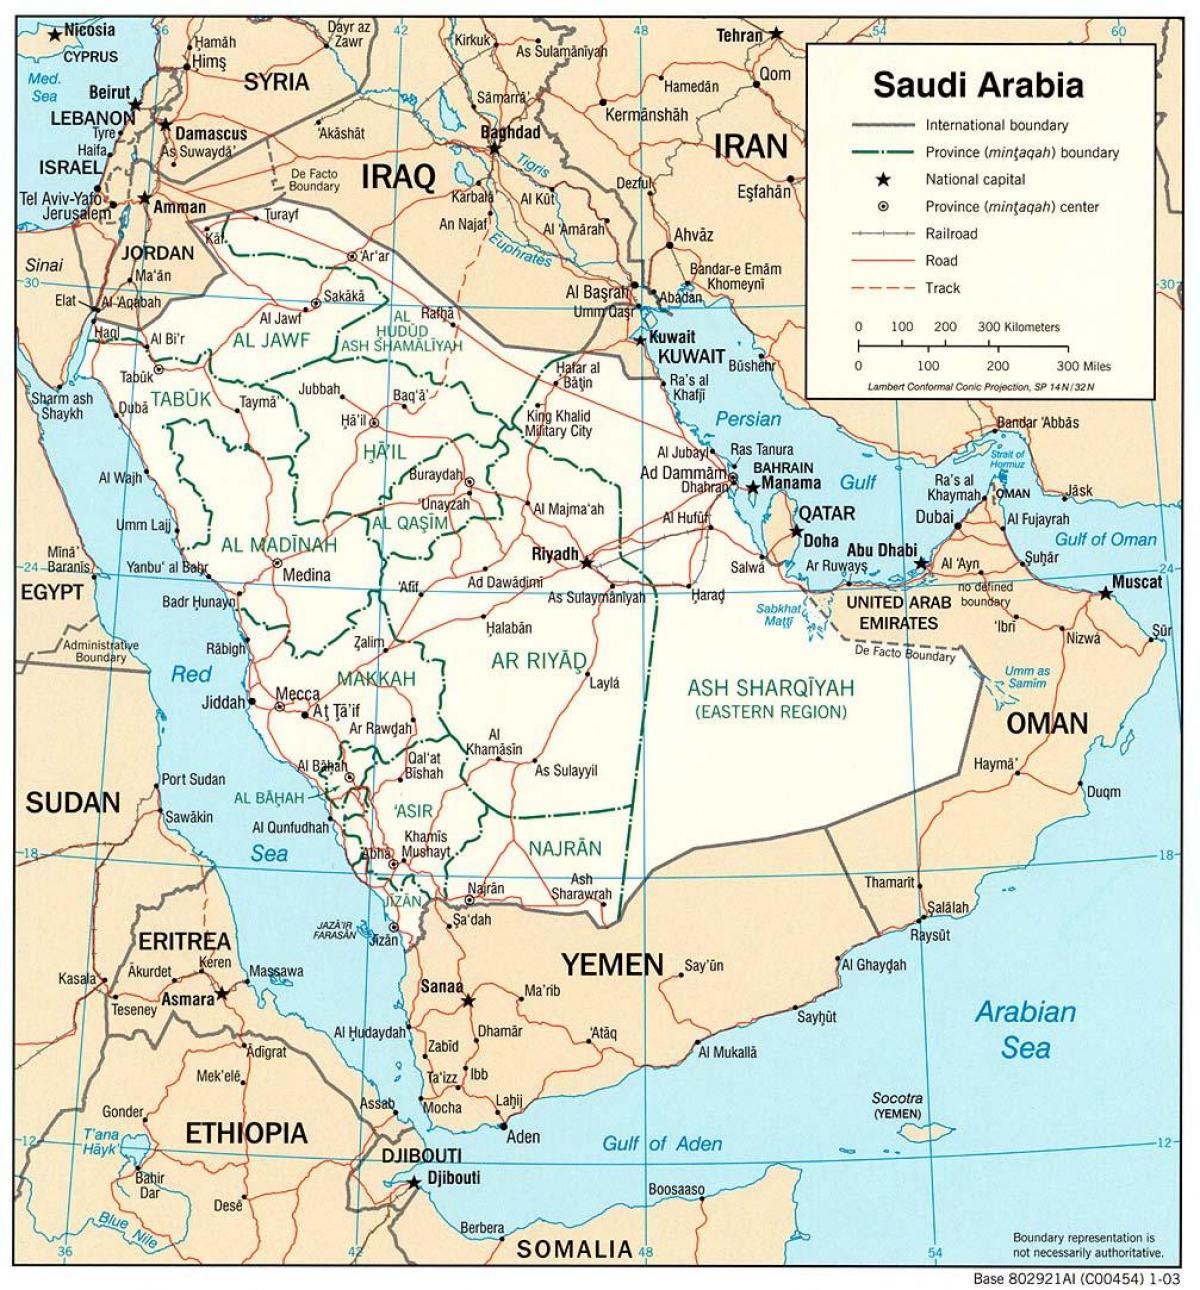 सऊदी अरब पूरा नक्शा